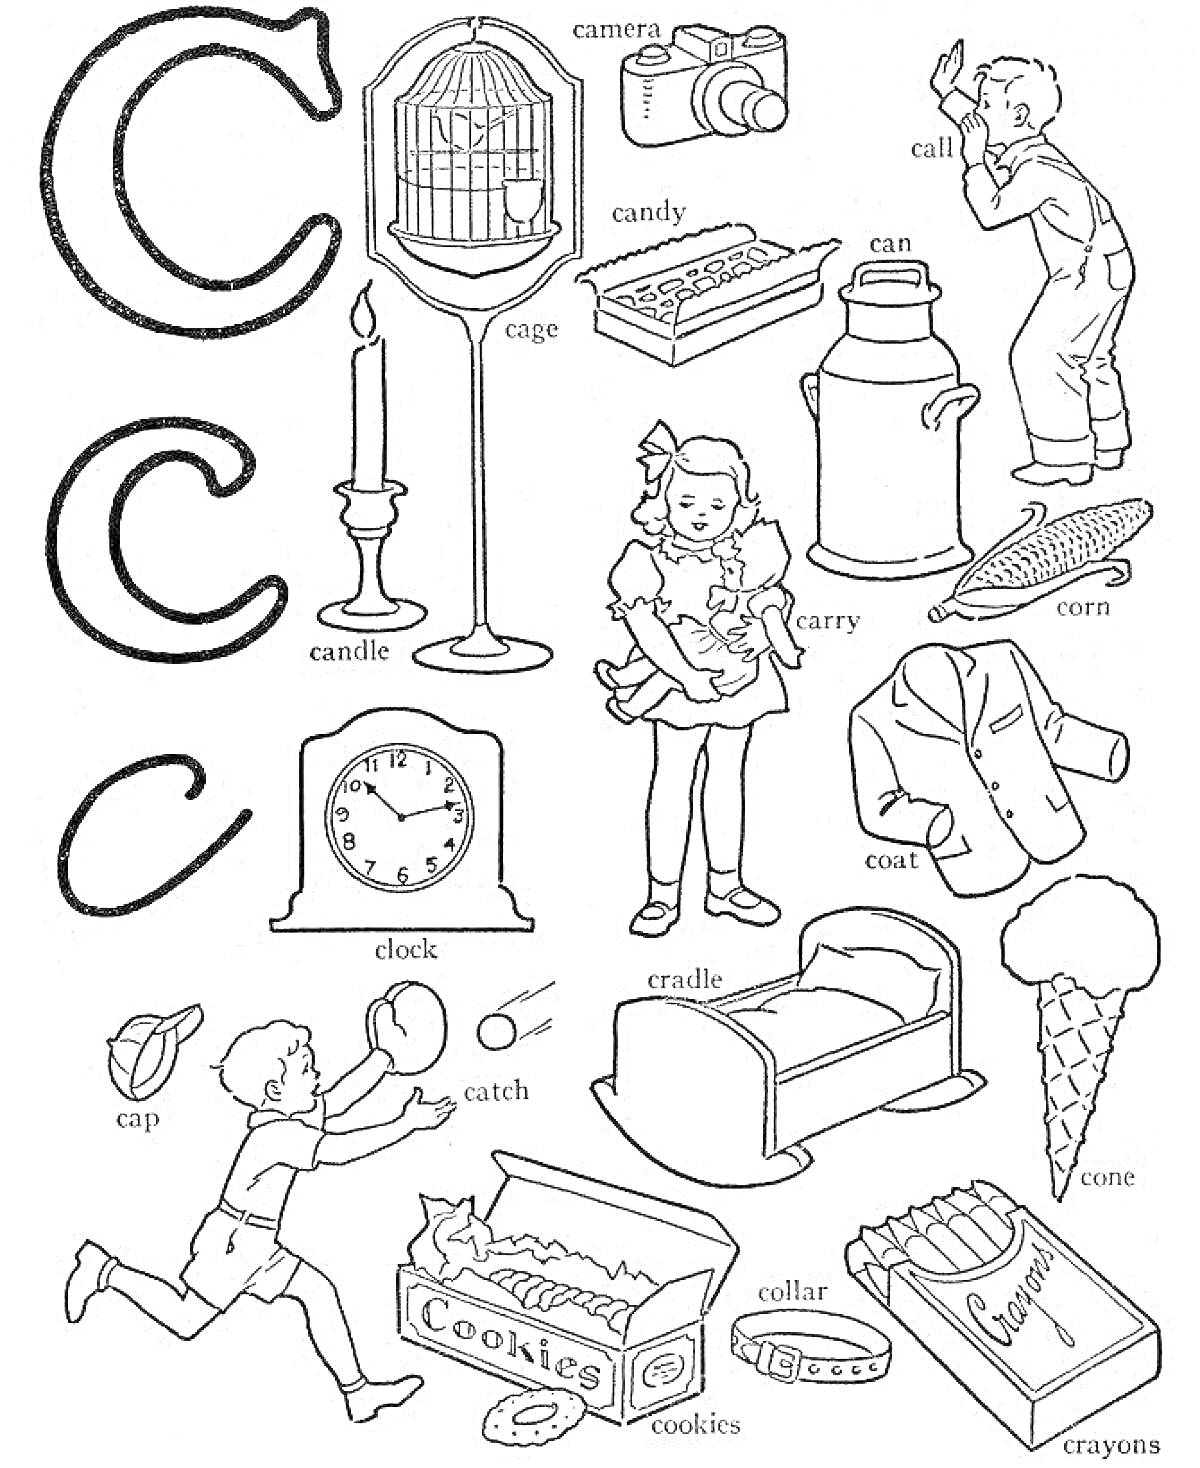 Раскраска Буква C: клетка, камера, конфета, банка, кальян, свеча, молочник, кукуруза, мальчик, кепка, поймать, часы, кроватка, девочка, колыбель, пальто, печенье, мороженое, карандаши